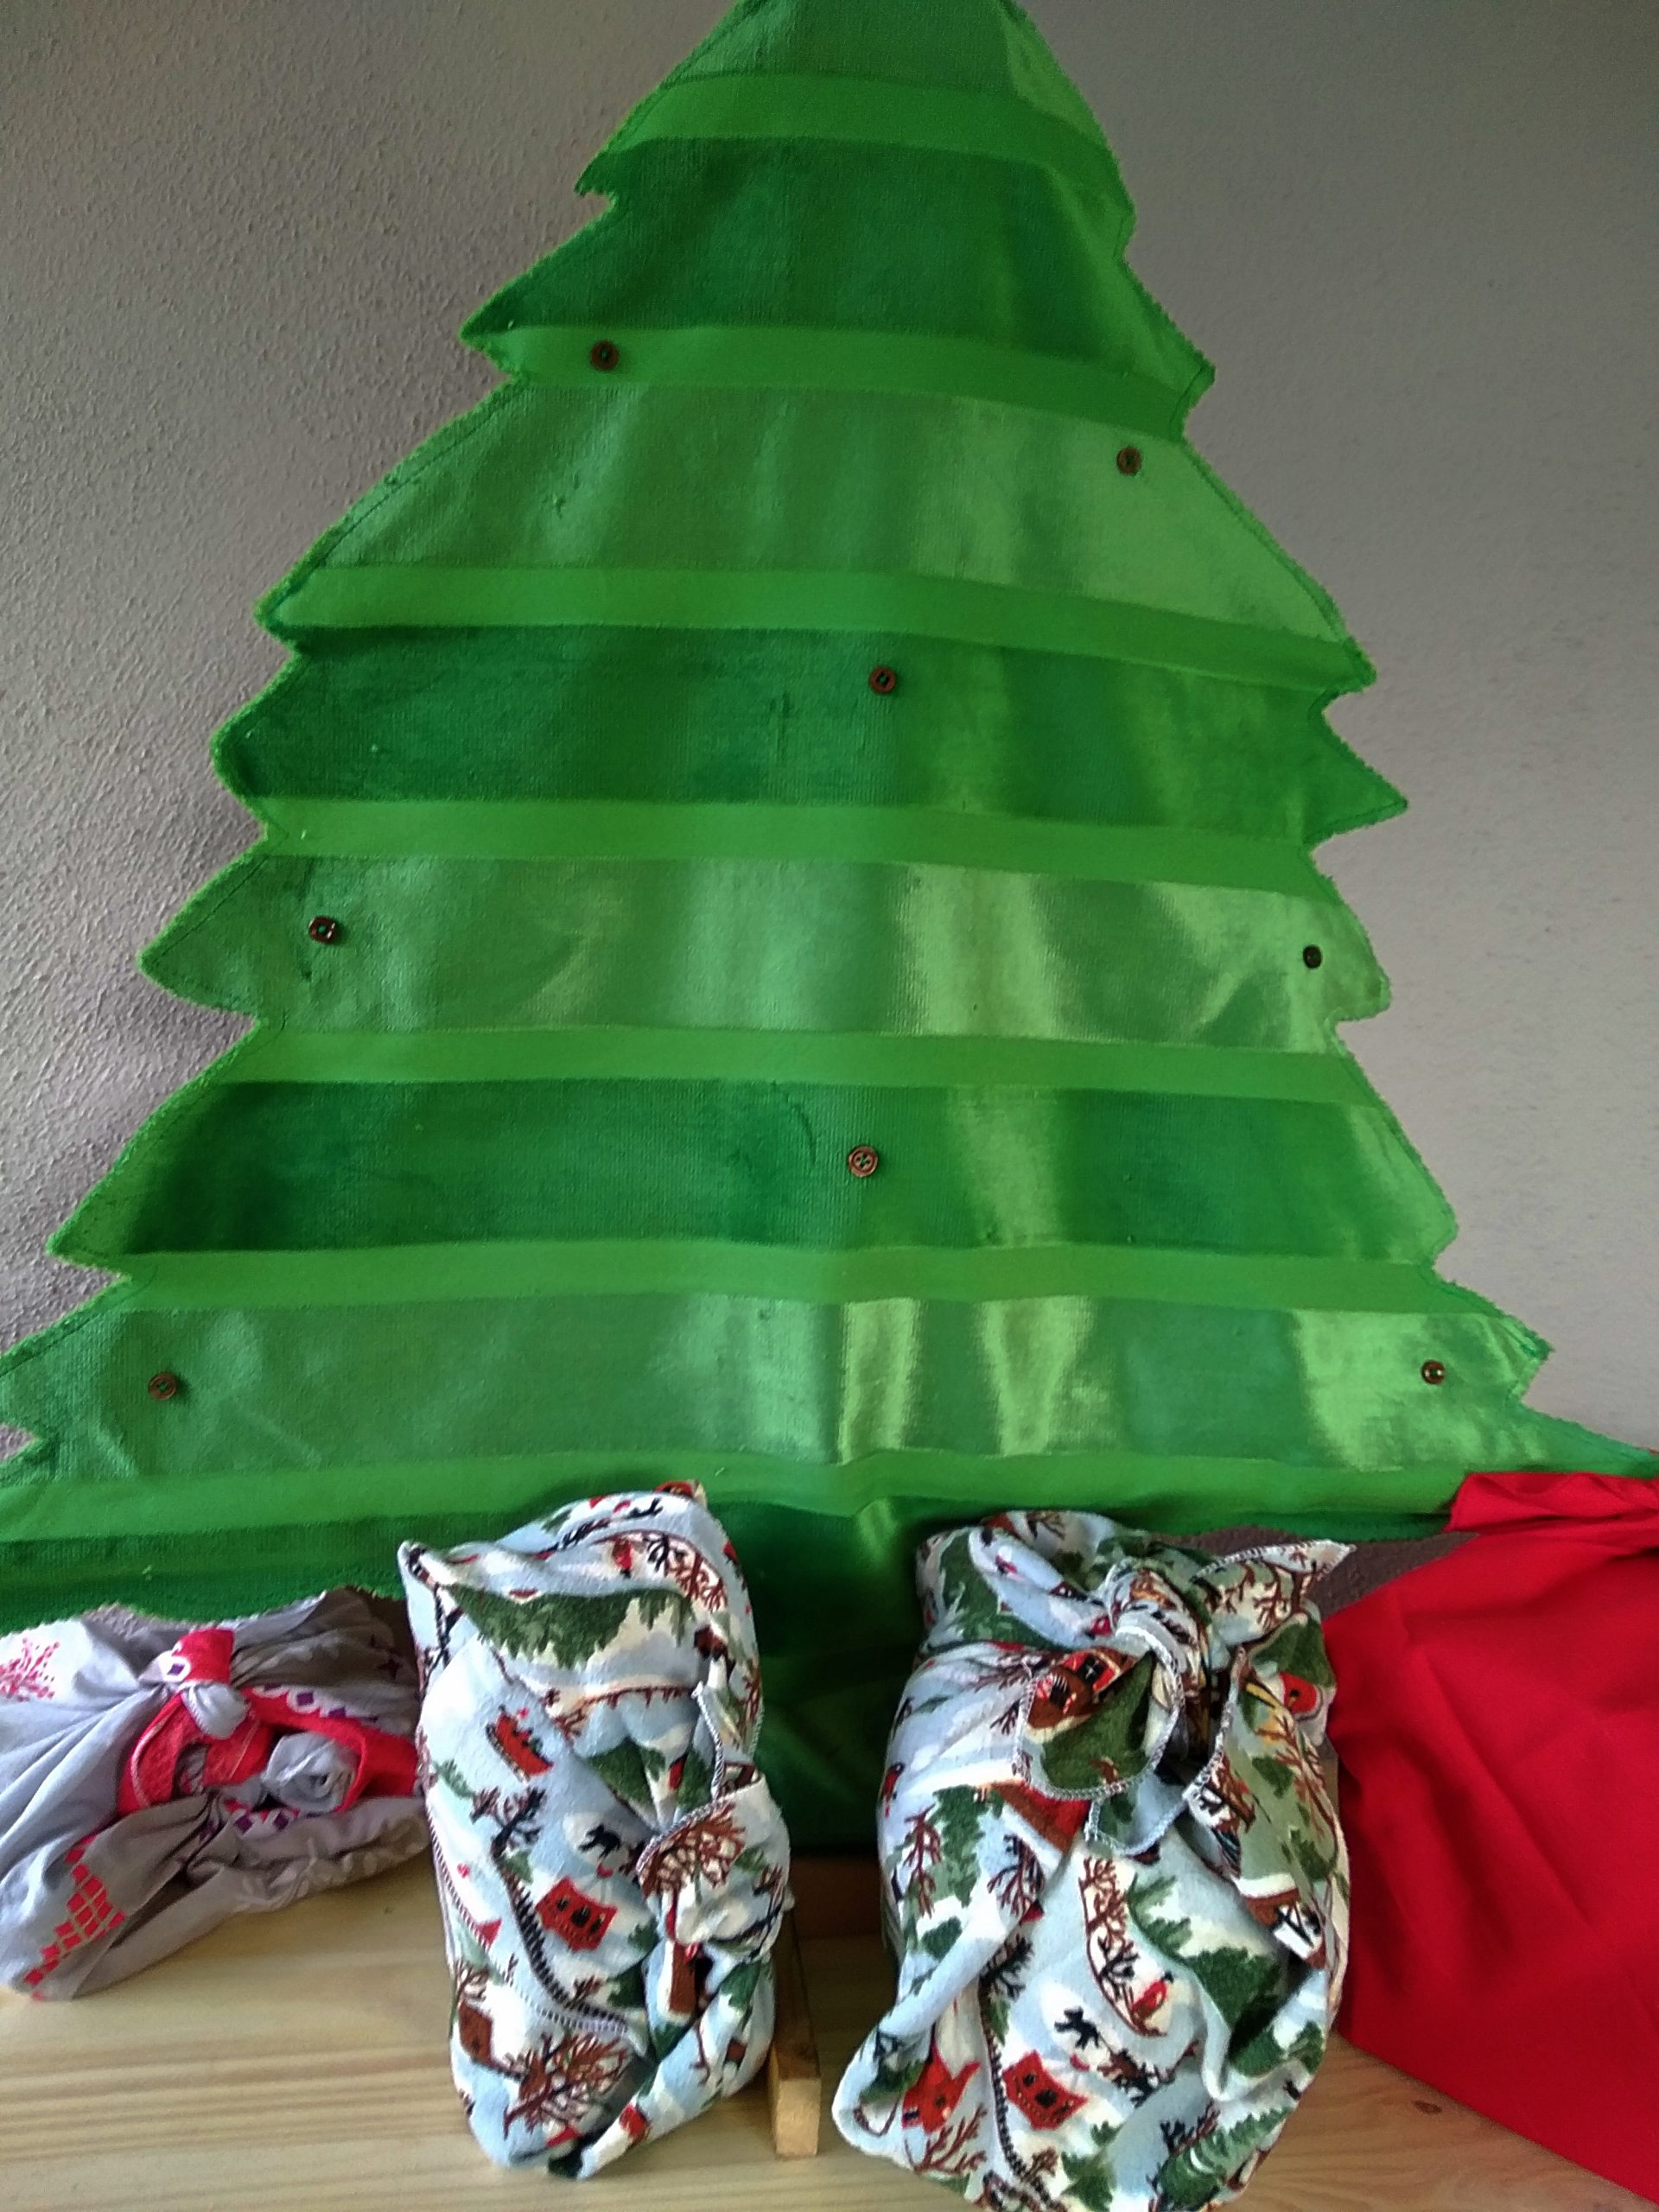 Pochon tissu Noel - sapins - Pochette cadeau tissu vert